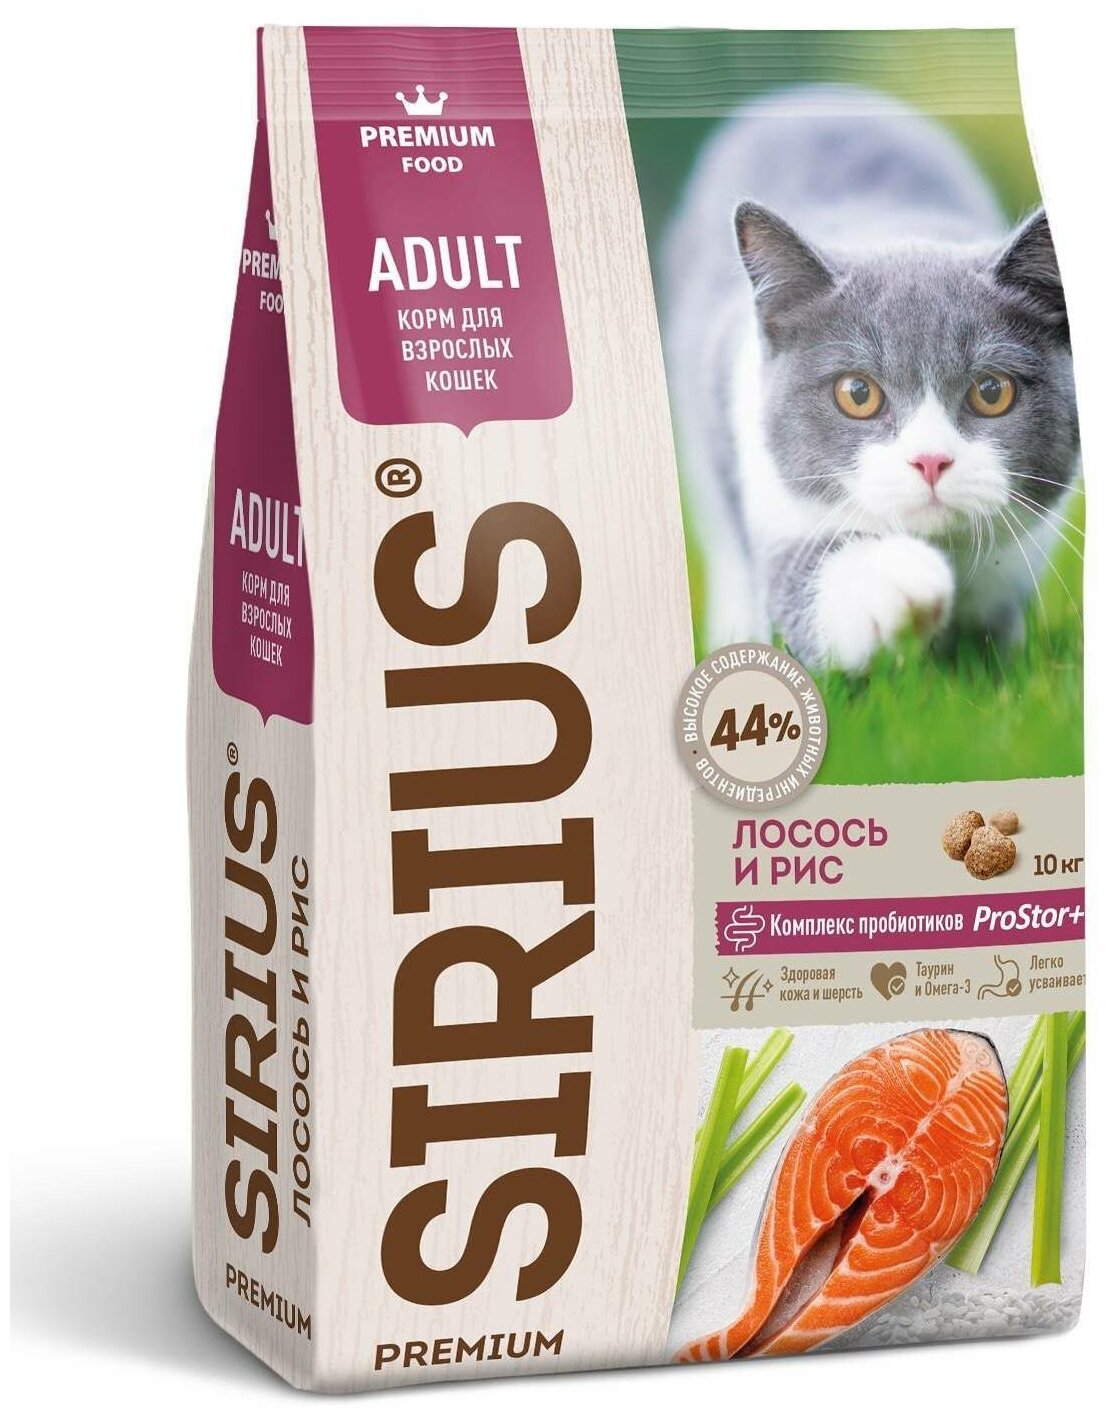 Сухой корм премиум класса SIRIUS для взрослых кошек, лосось и рис, 10 кг